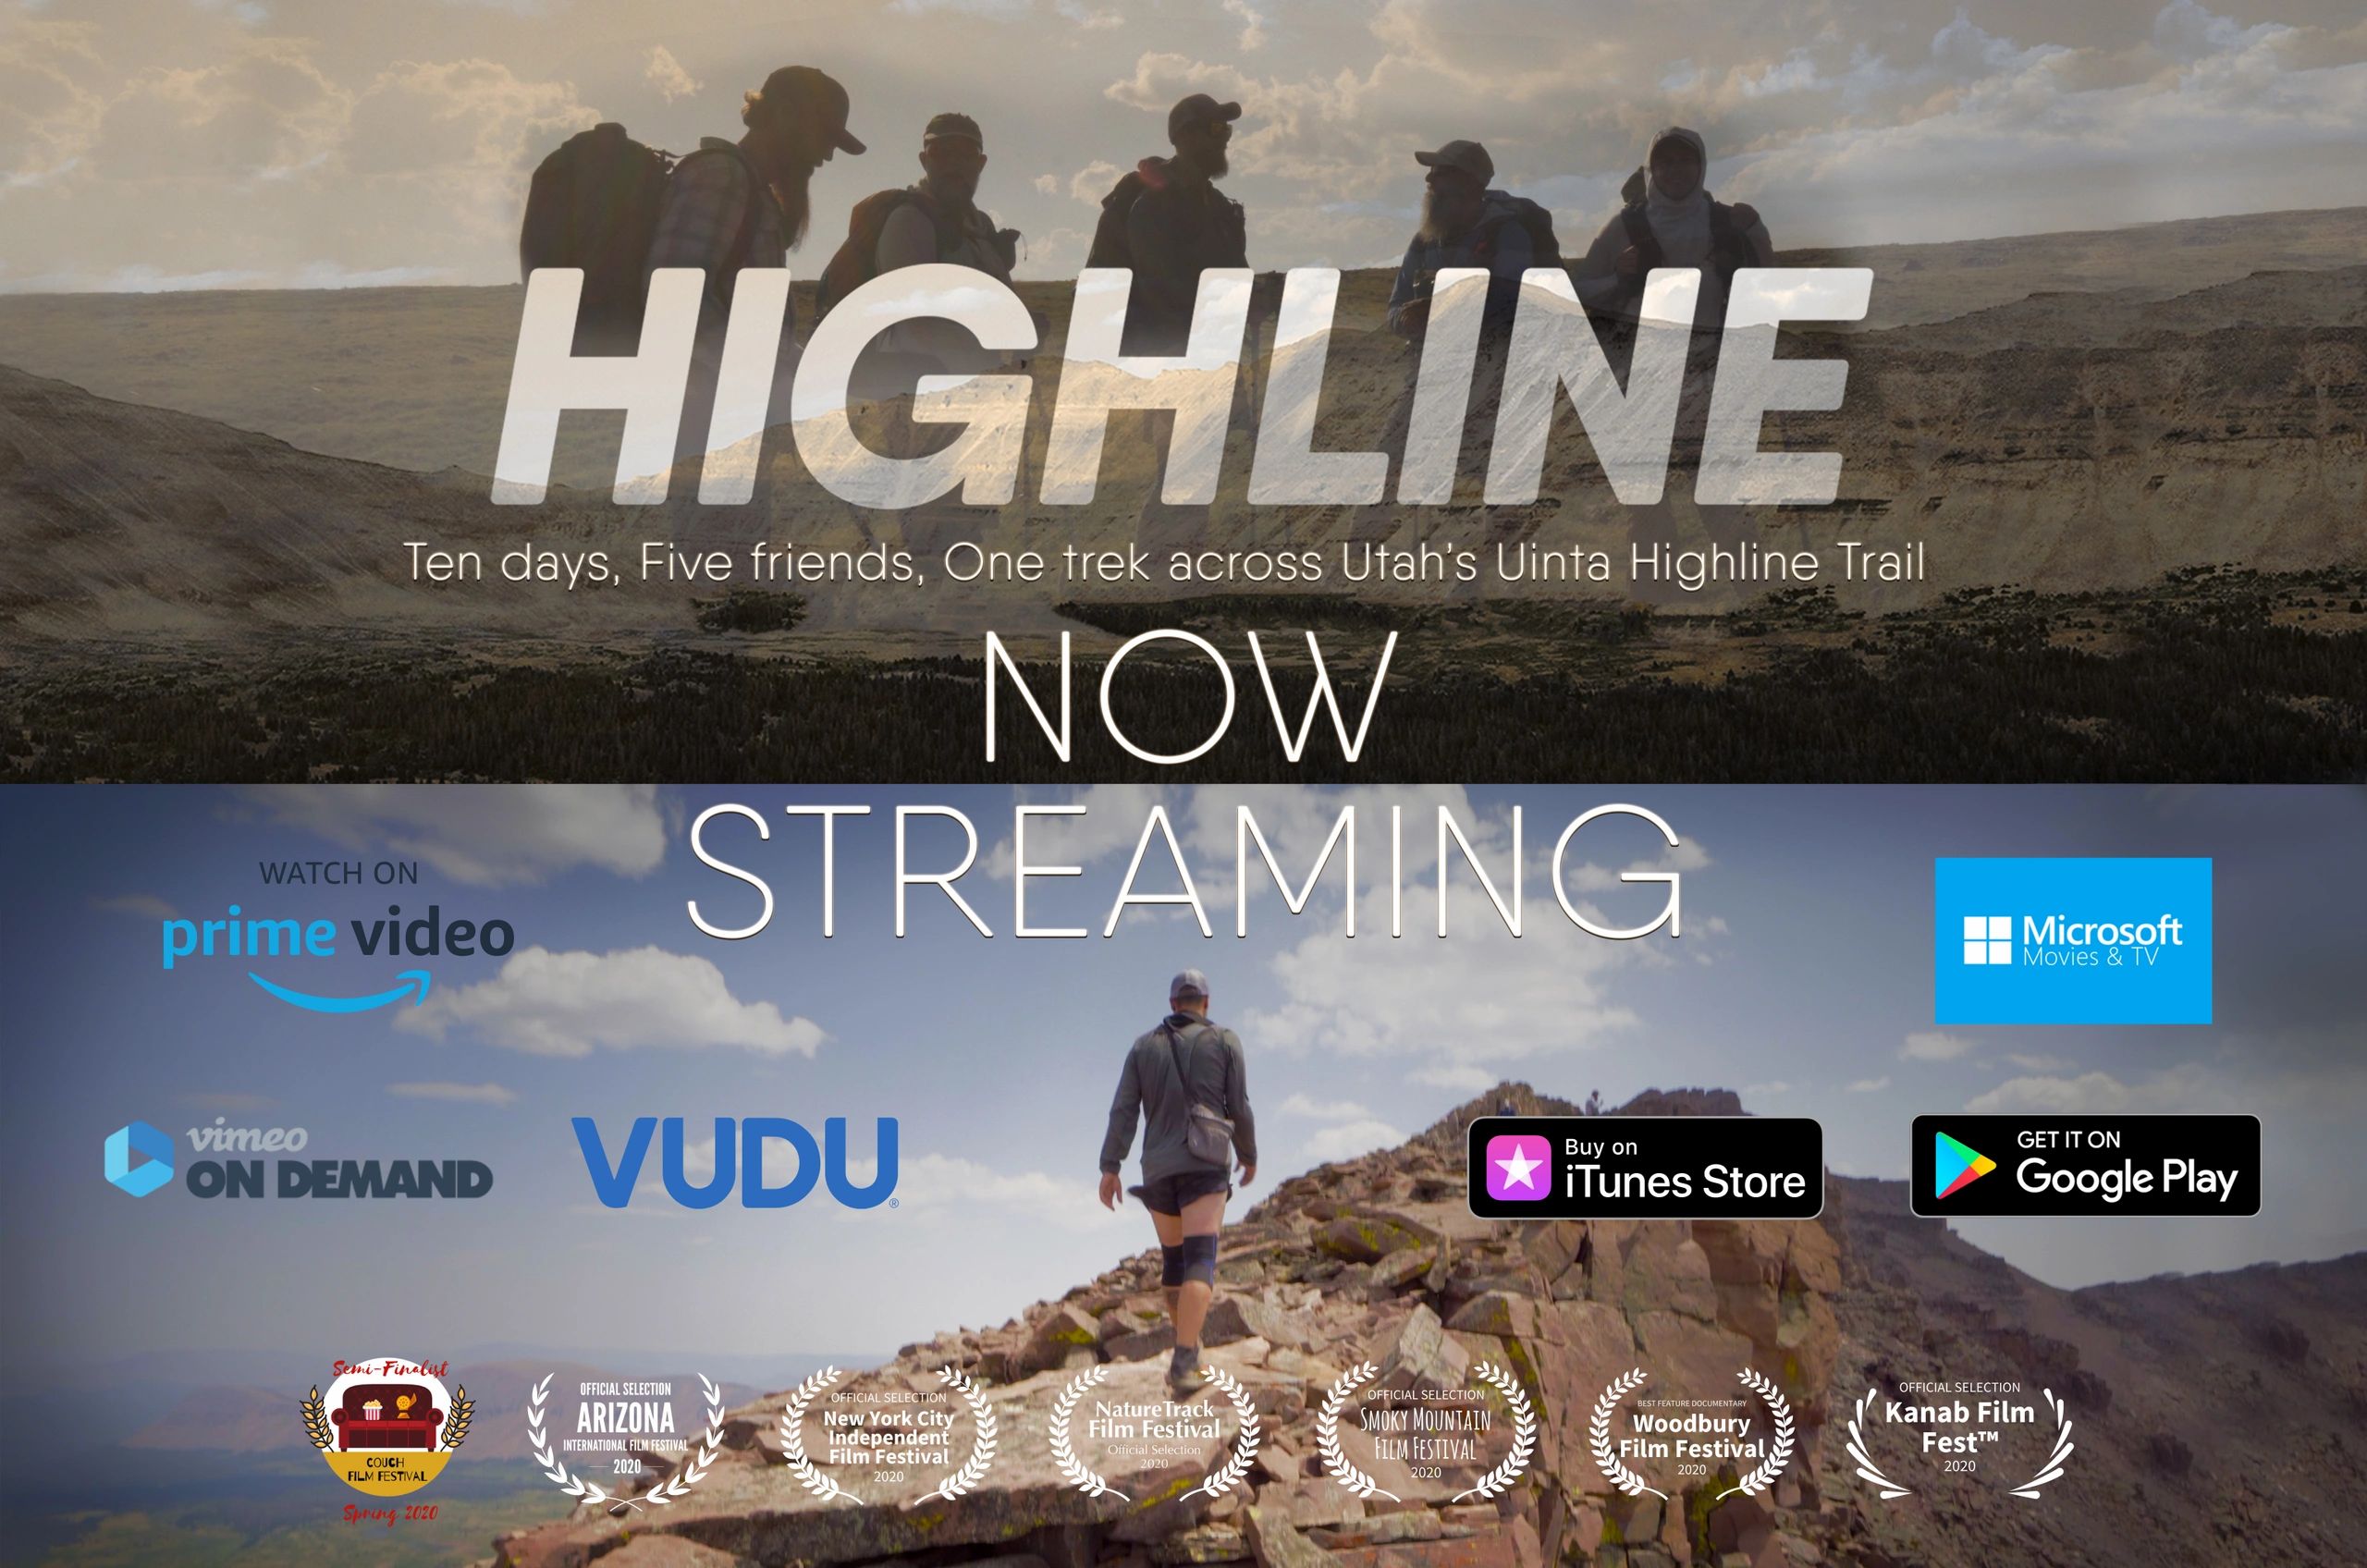 HIGHLINE
10 days, 5 friends, 1 trek across Utah's Uinta Highline Trail